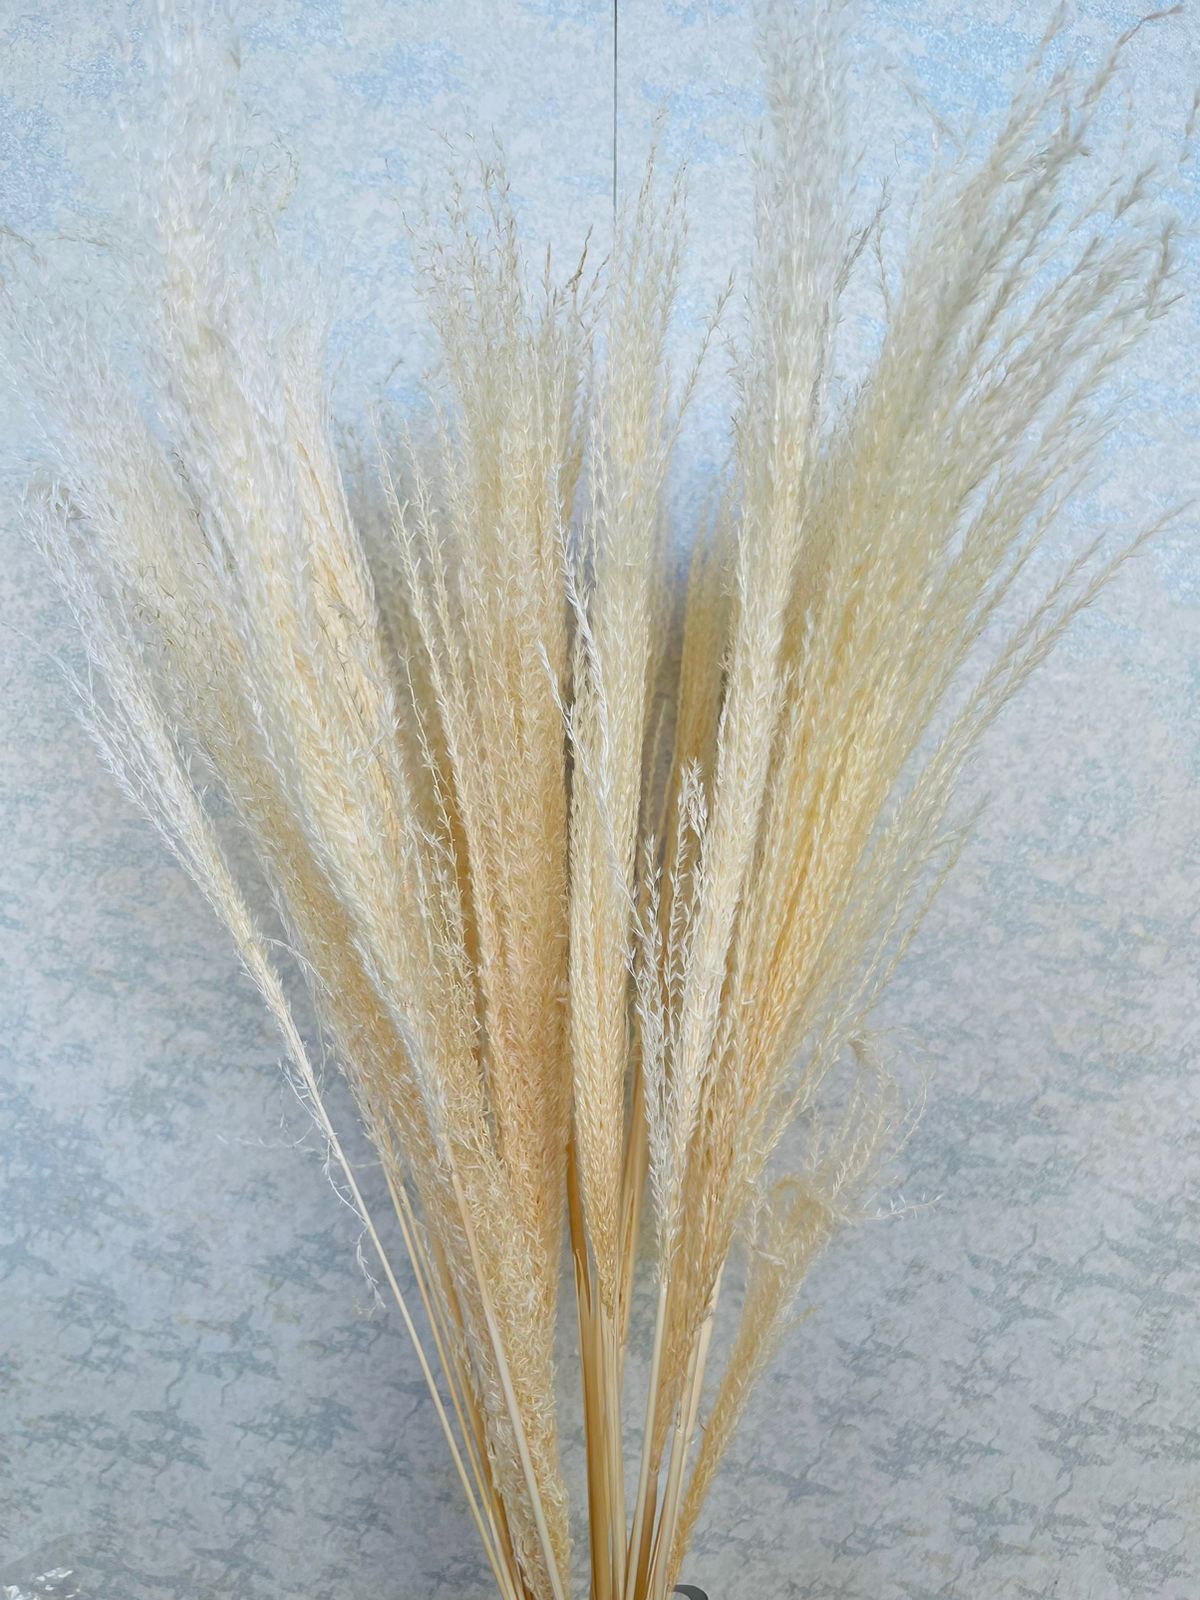 Dried giant reeds (H:77cm W:7cm)